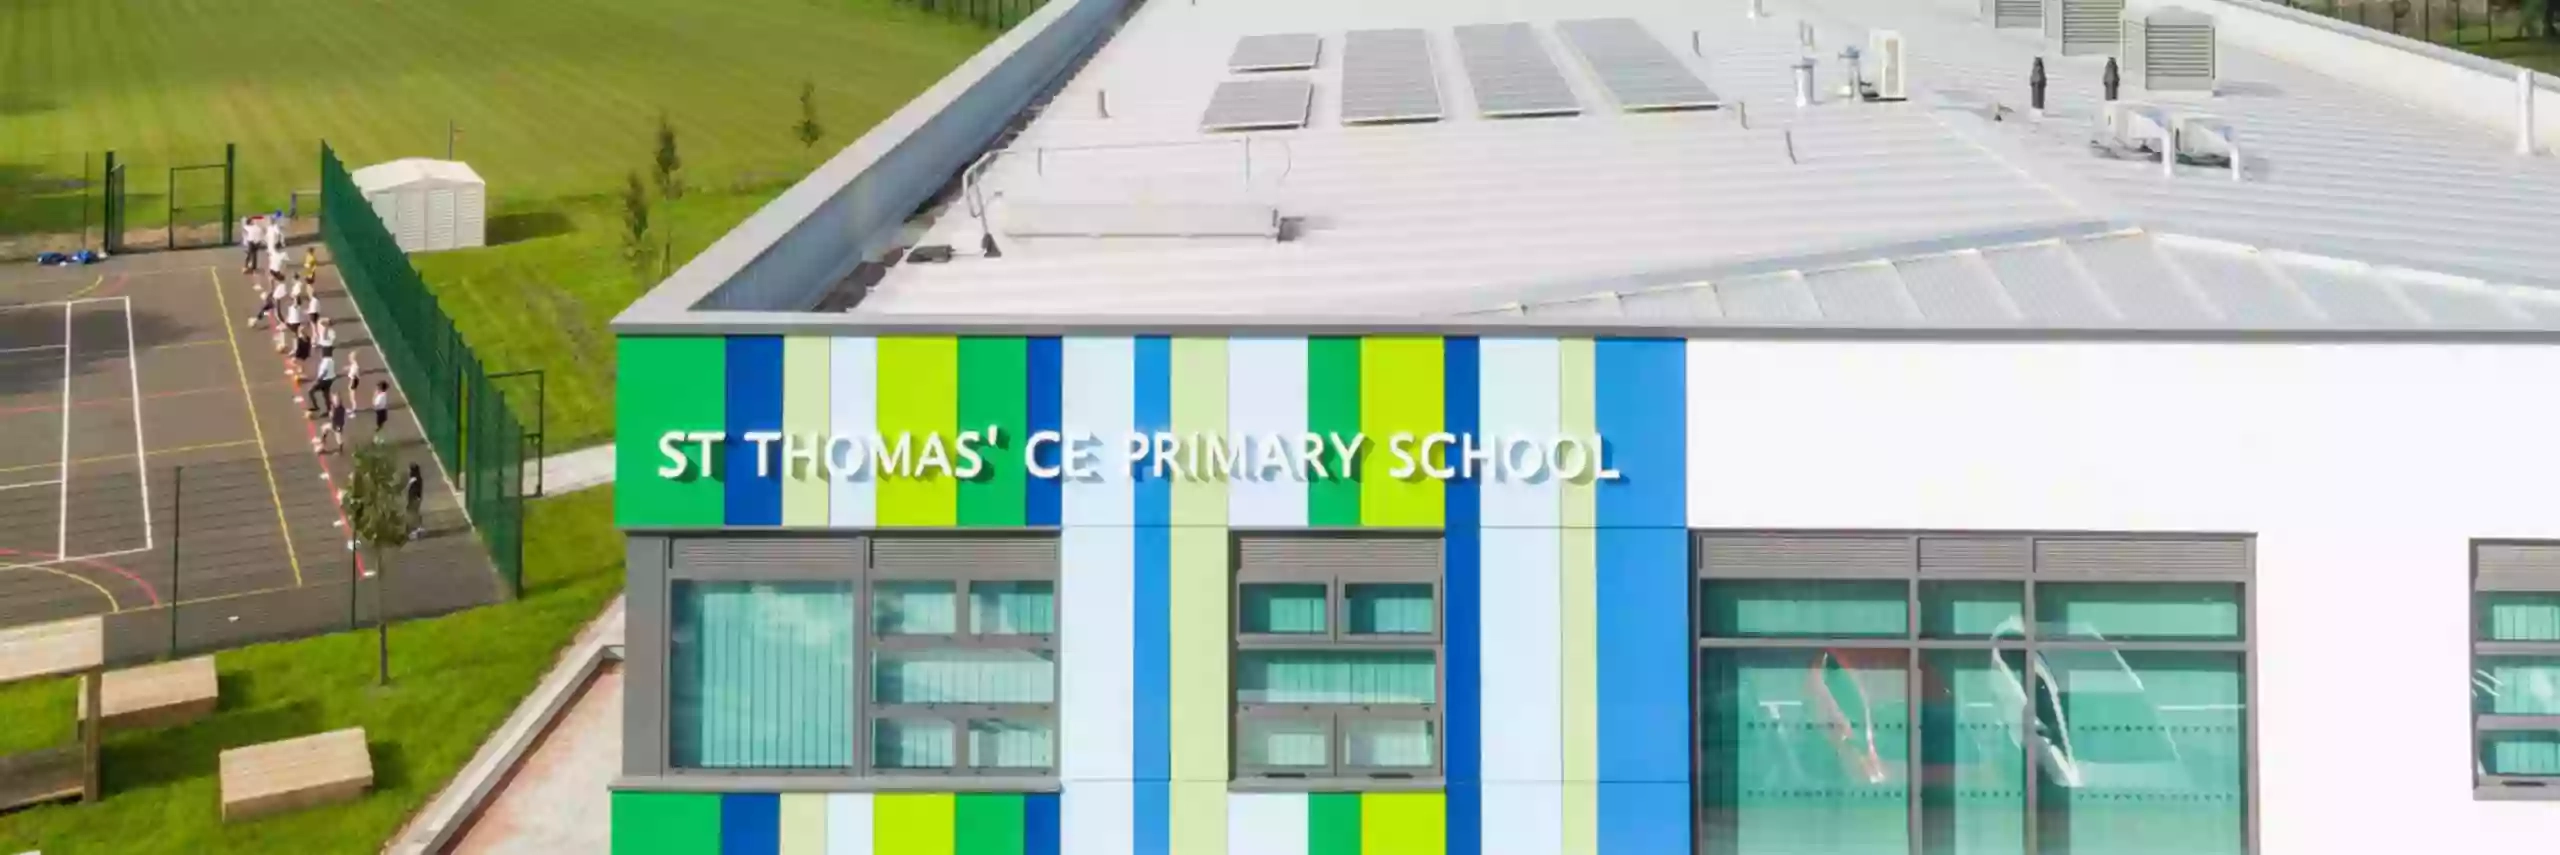 St Thomas' CE Primary School (Juniors)